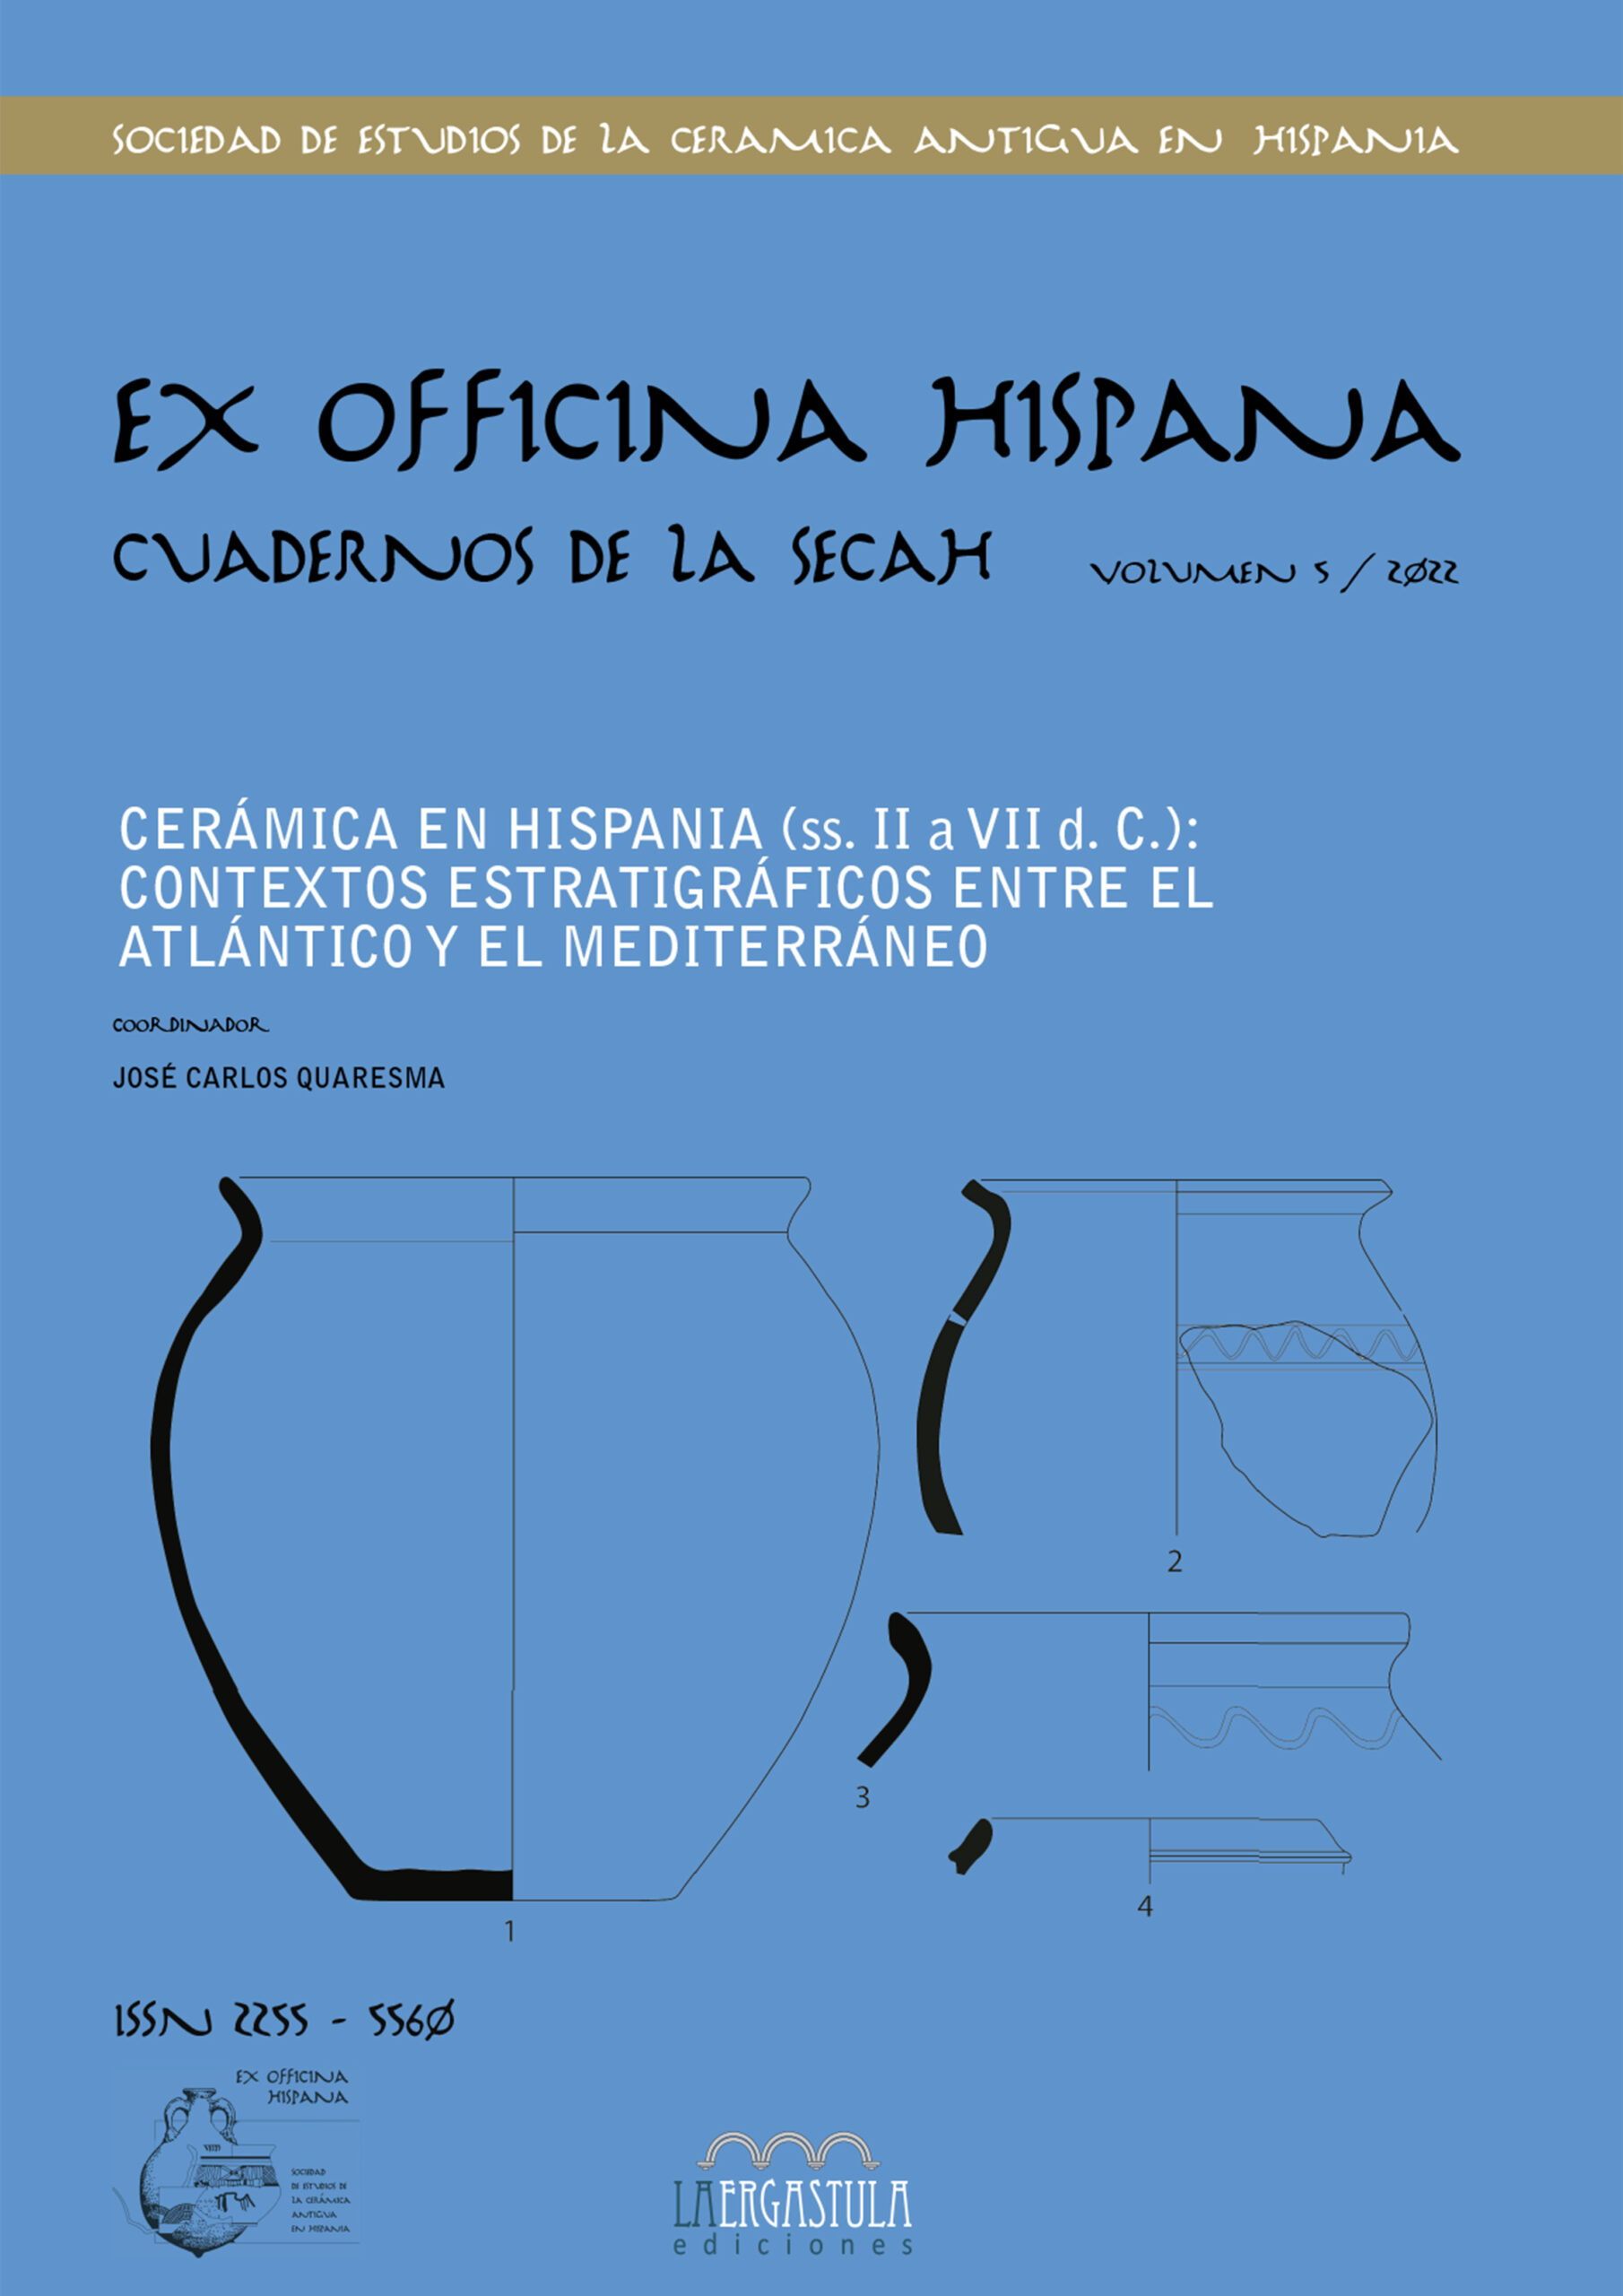 Cerámica en Hispania (ss. II a VII d.c): contextos estratigráficos entre el Atlántico y el Mediterráneo. 101092652